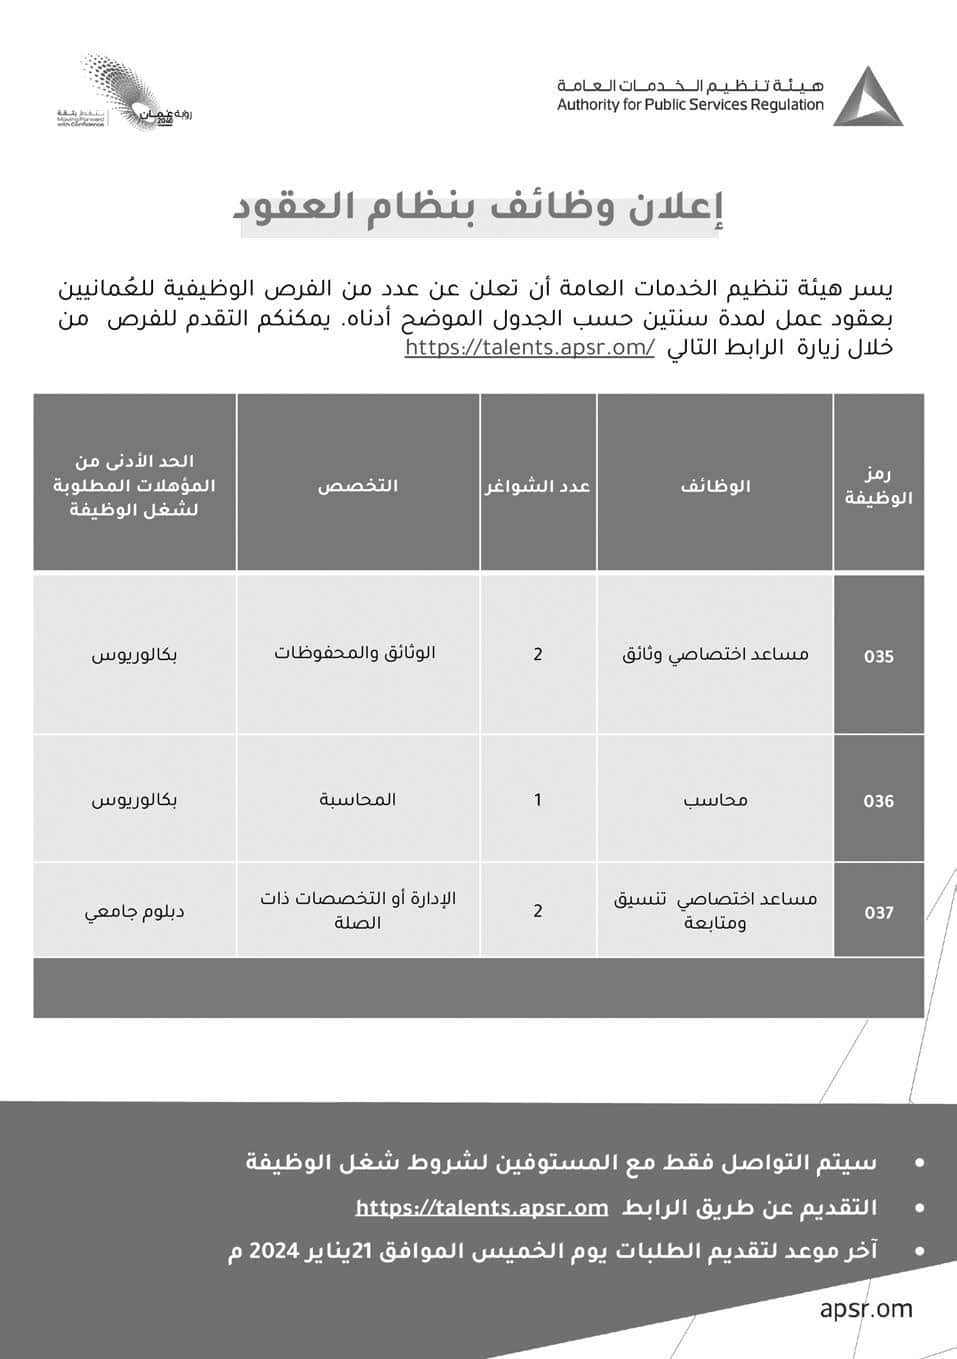 وظائف هيئة تنظيم الخدمات العامة 2024 في سلطنة عمان برواتب ومزايا عالية لجميع الجنسيات #2